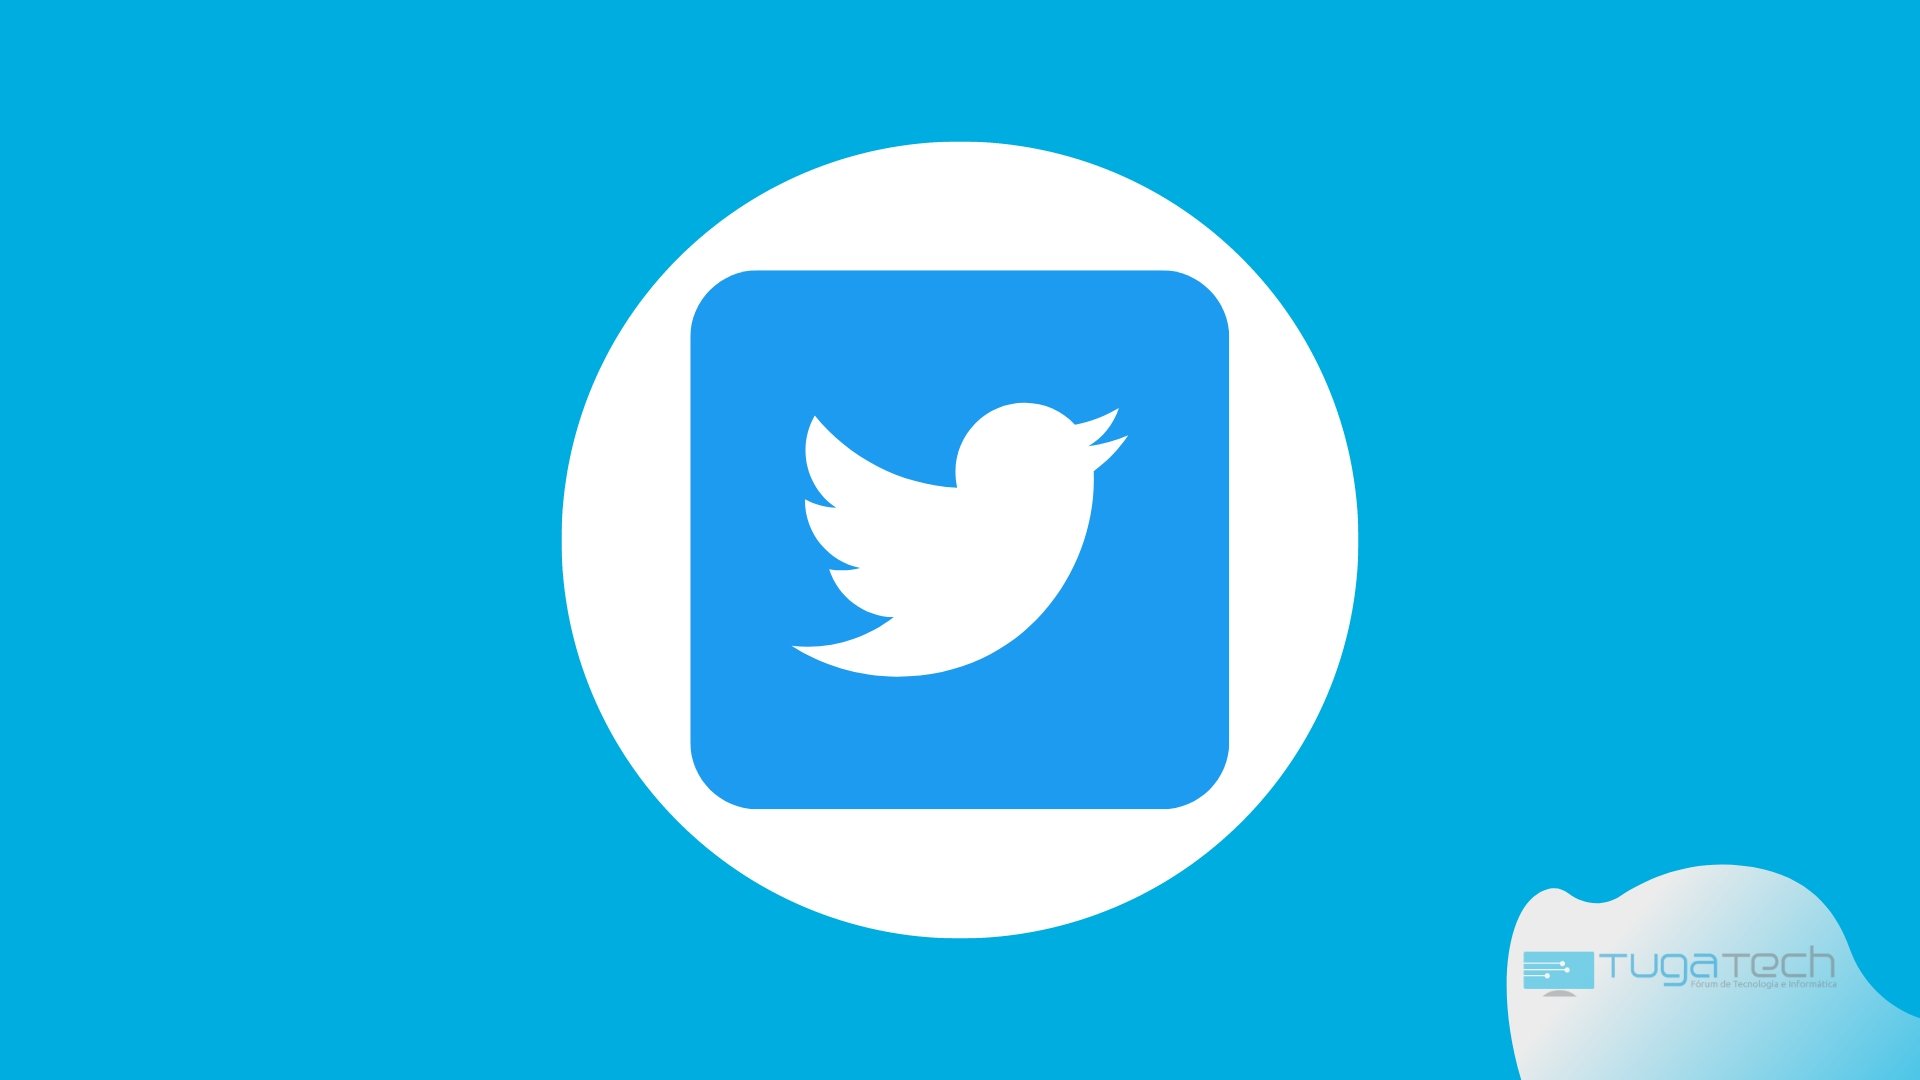 Logo do Twitter em fundo azul